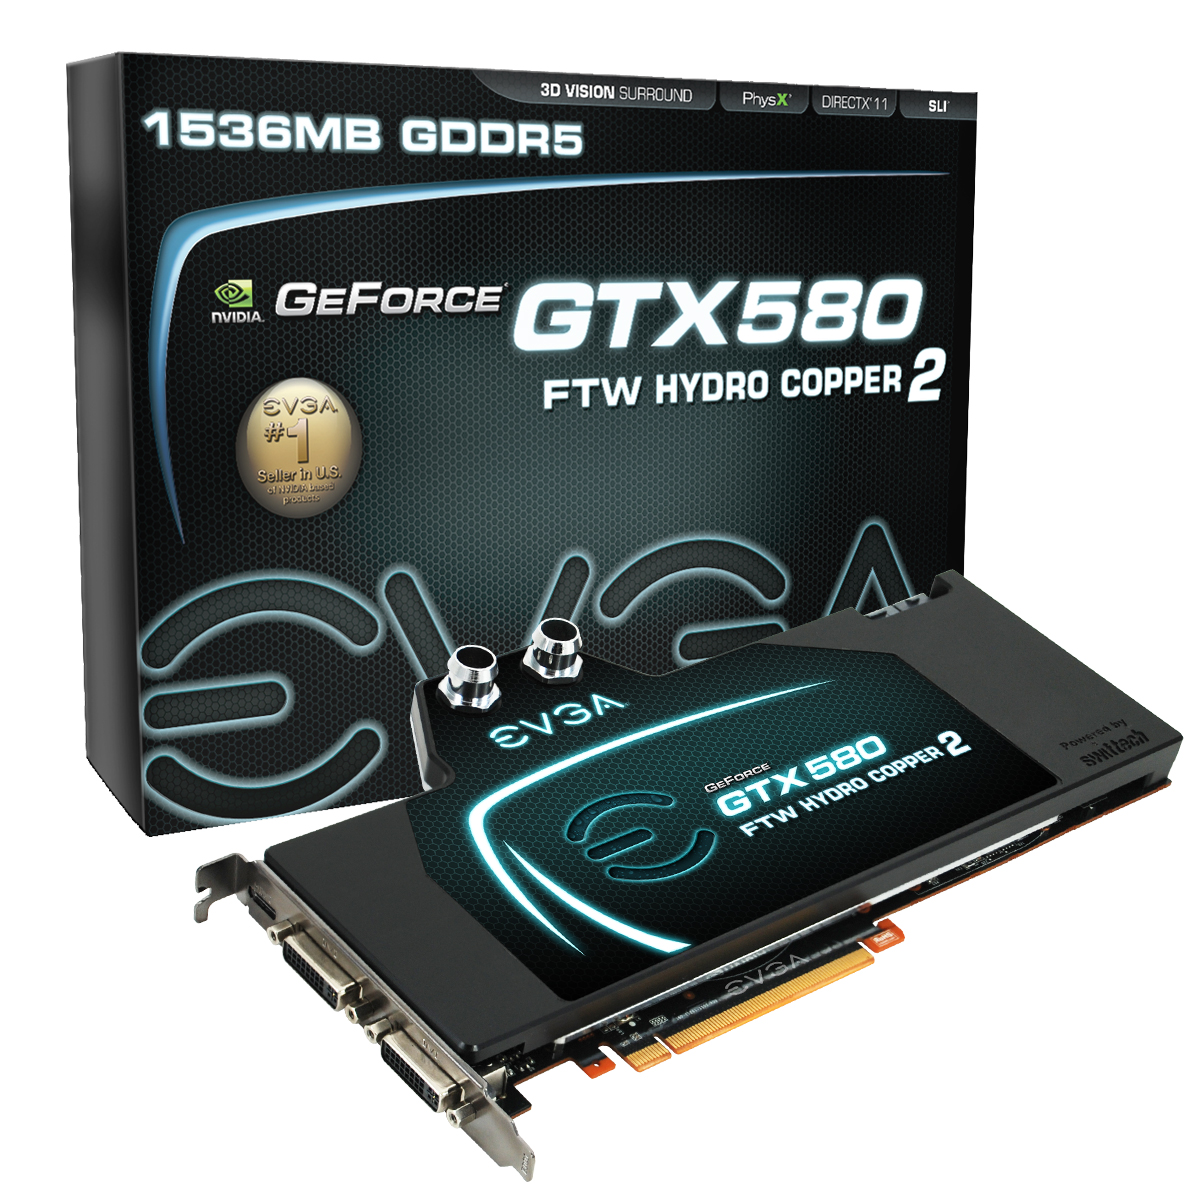 Immagine pubblicata in relazione al seguente contenuto: EVGA lancia la top card GeForce GTX 580 FTW Hydro Copper 2 | Nome immagine: news14187_1.jpg